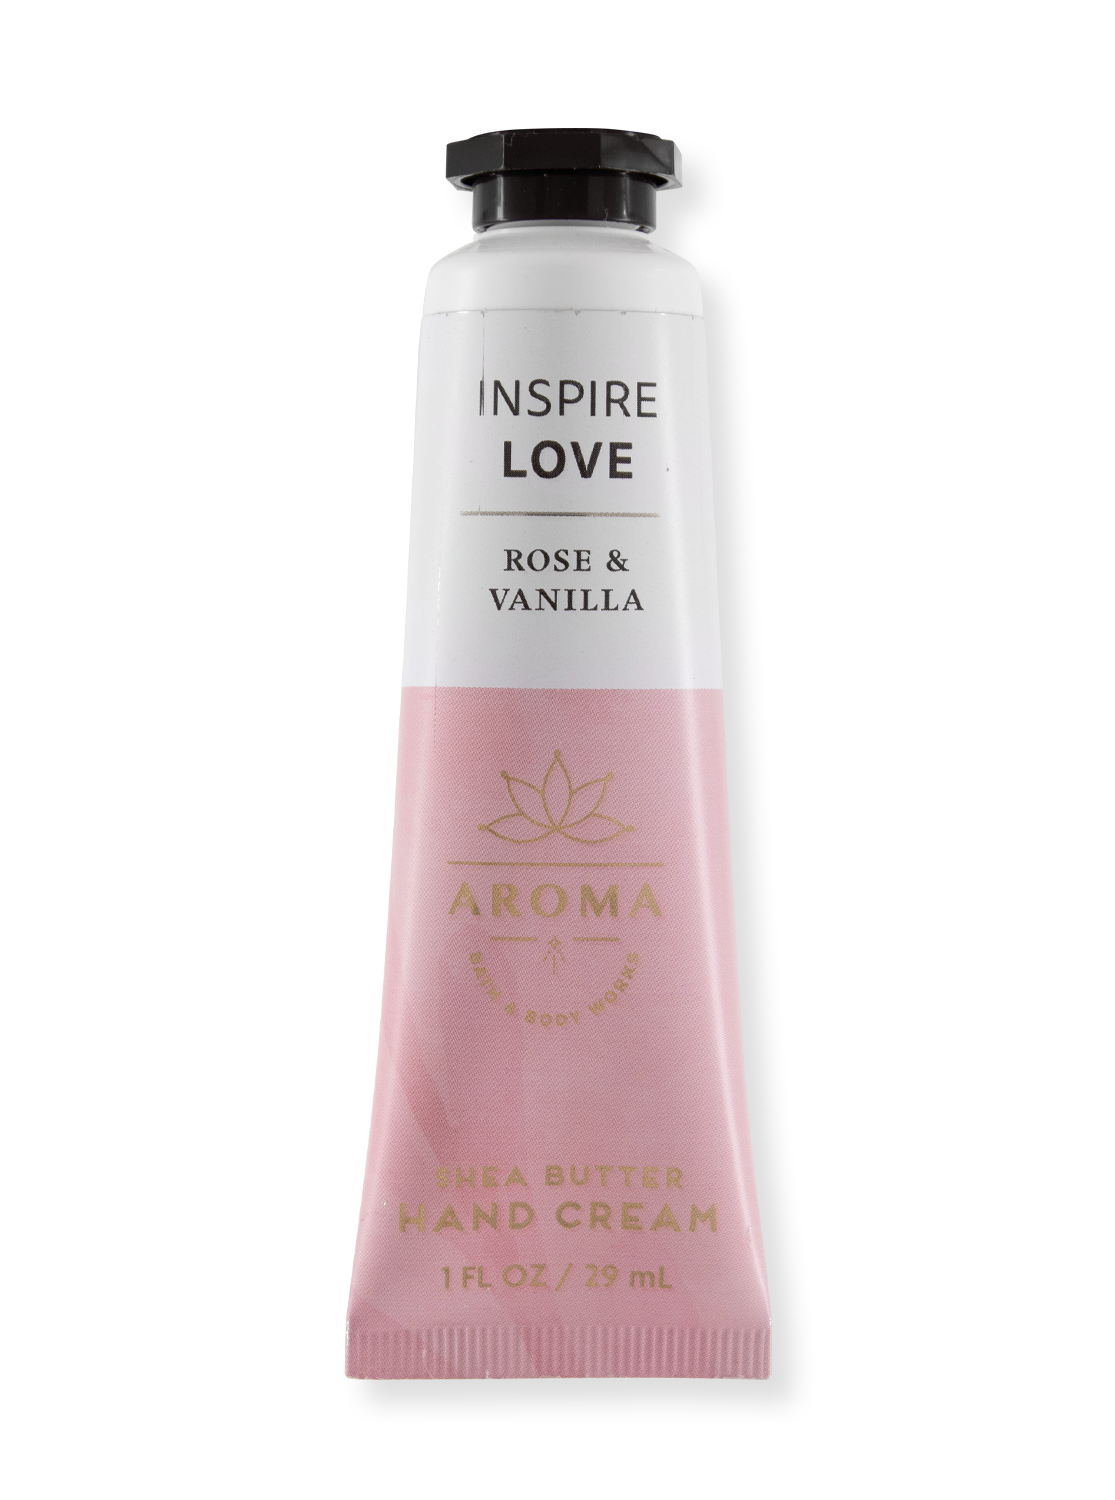 Hand cream - aroma- inspire love - rose & vanilla - 29ml